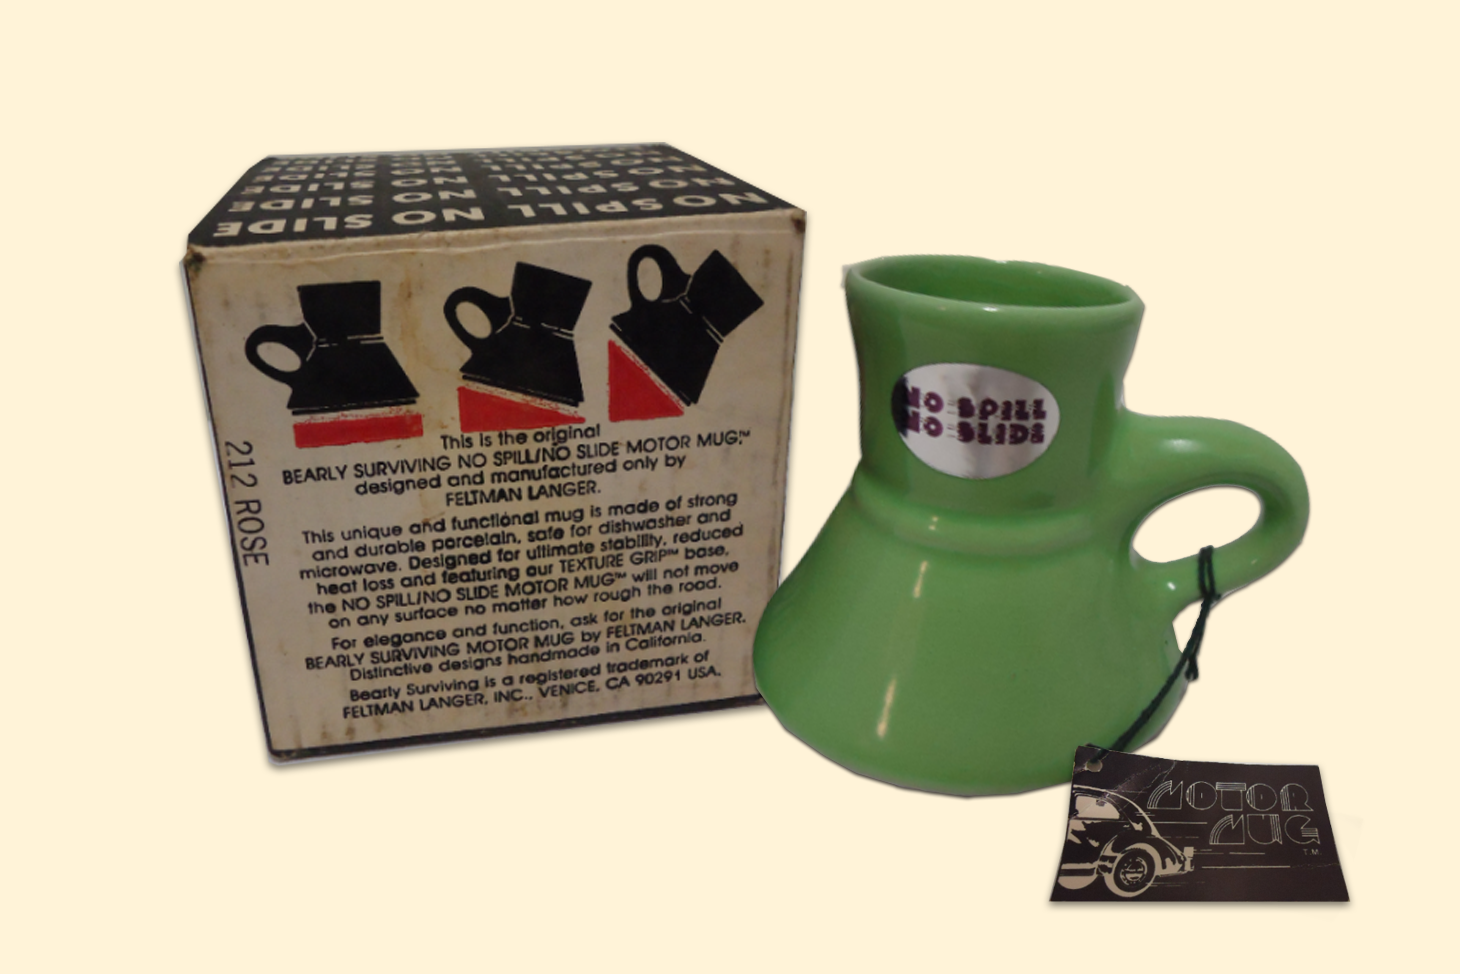 10OZ No Spill Non-slip Filter Press Coffee Mug